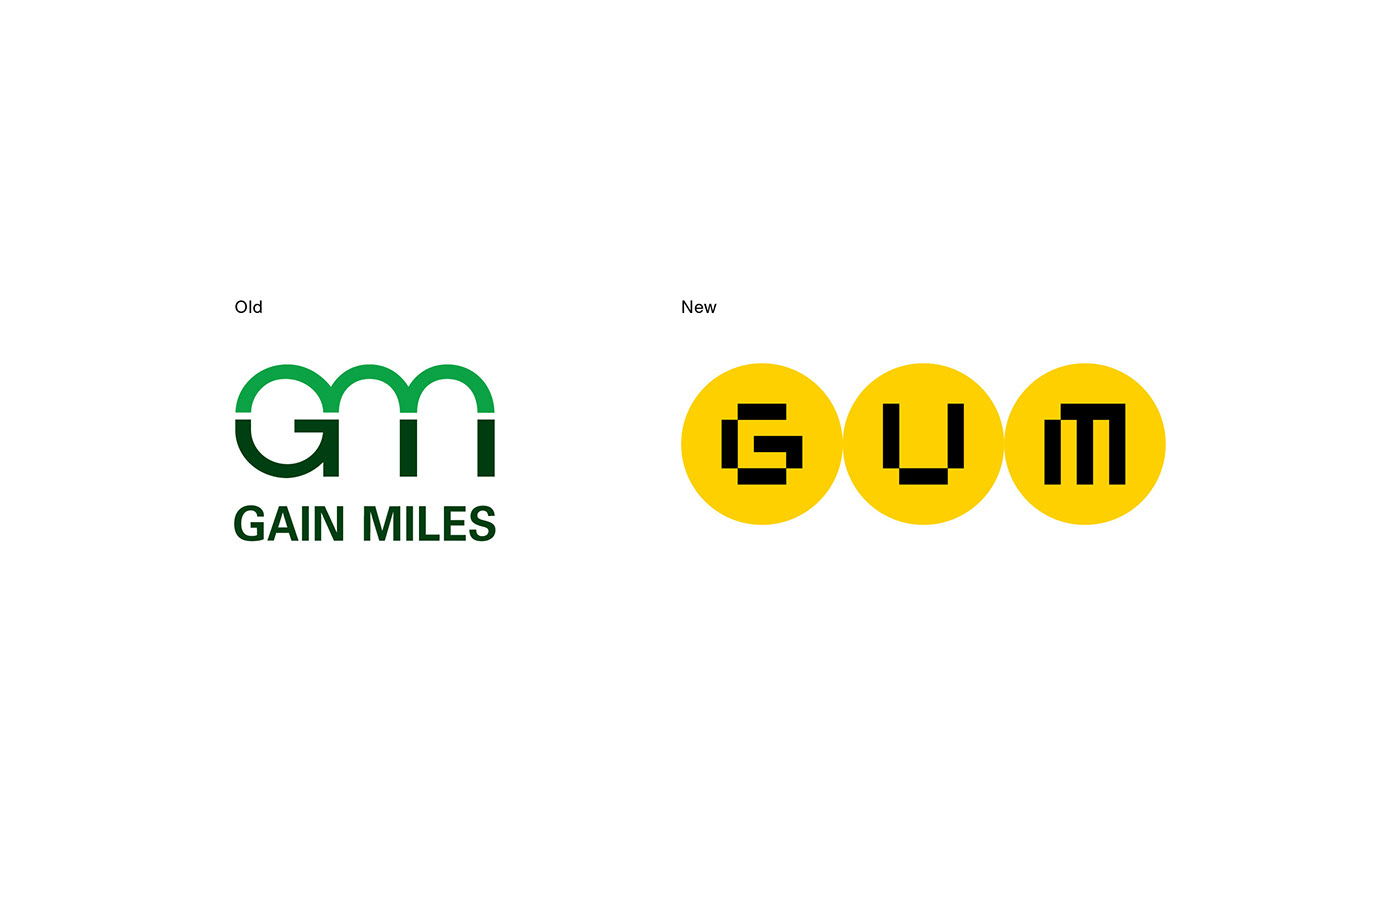 brand identity Corporate Identity graphic design  gum logo MPF Office picotgram Rebrand